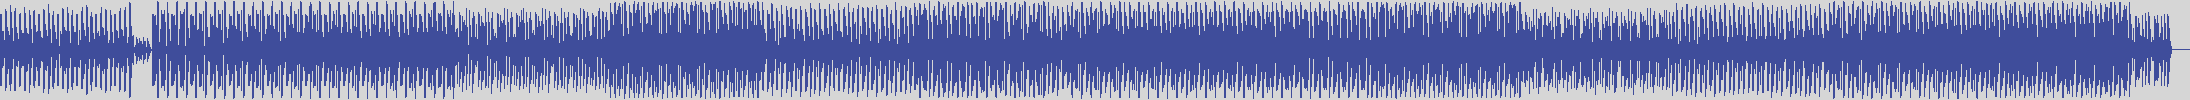 noclouds_chillout [NOC099] Minimal Movement - Club [Original Mix] audio wave form